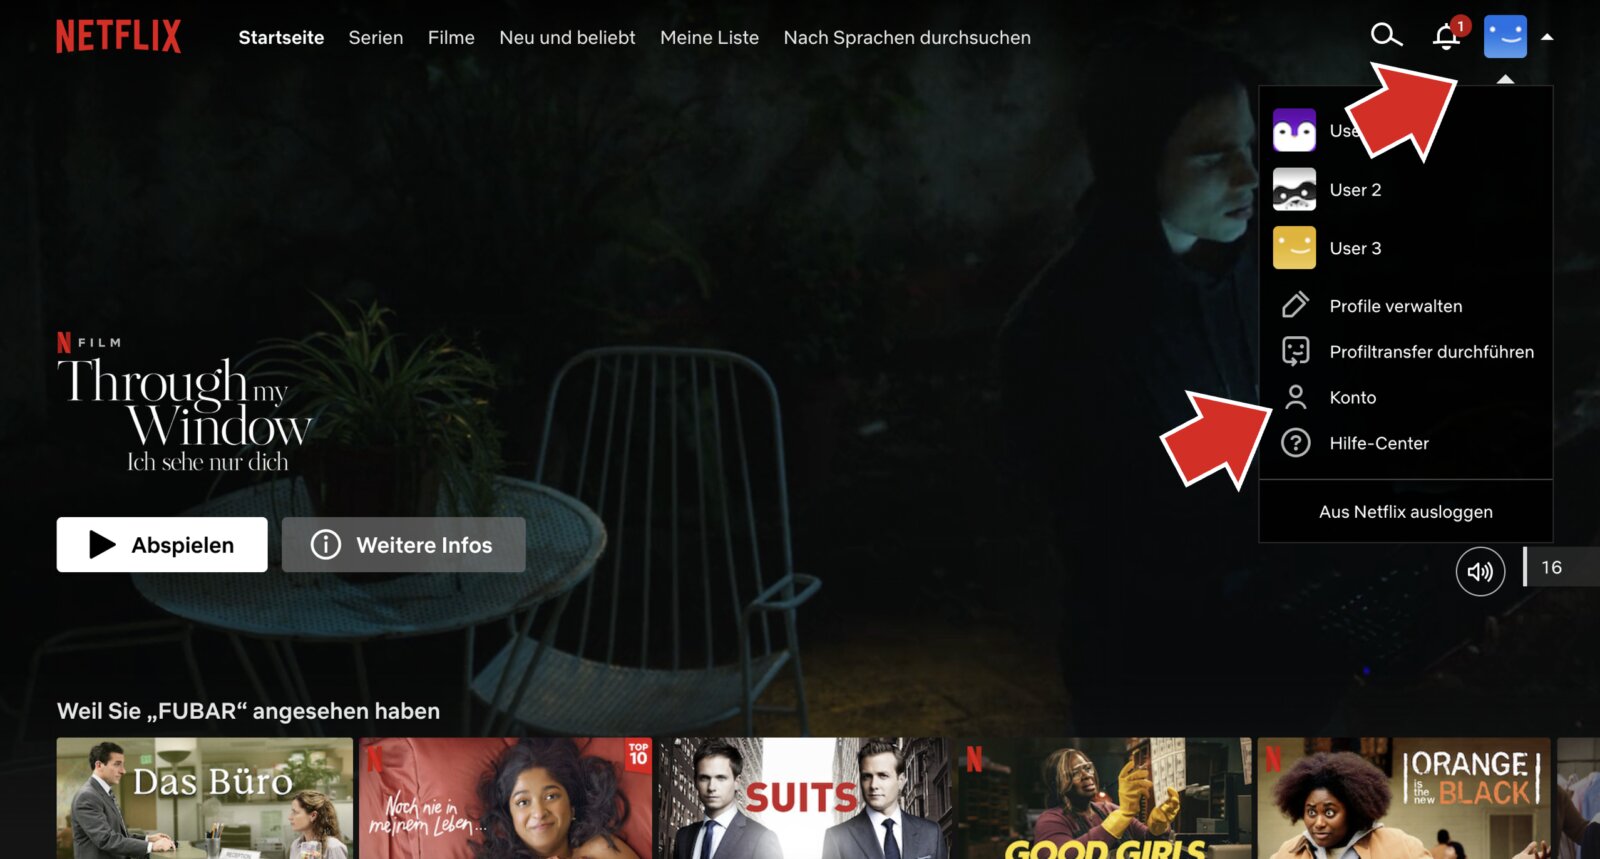 Ein Screenshot der Netflix-Mediathek mit einem roten Pfeil auf das Profil-Icon und einen auf das Wort "Konto", als Teil einer Anleitung, weil man seine Kontoeinstellungen auf Netflix anpassen kann.